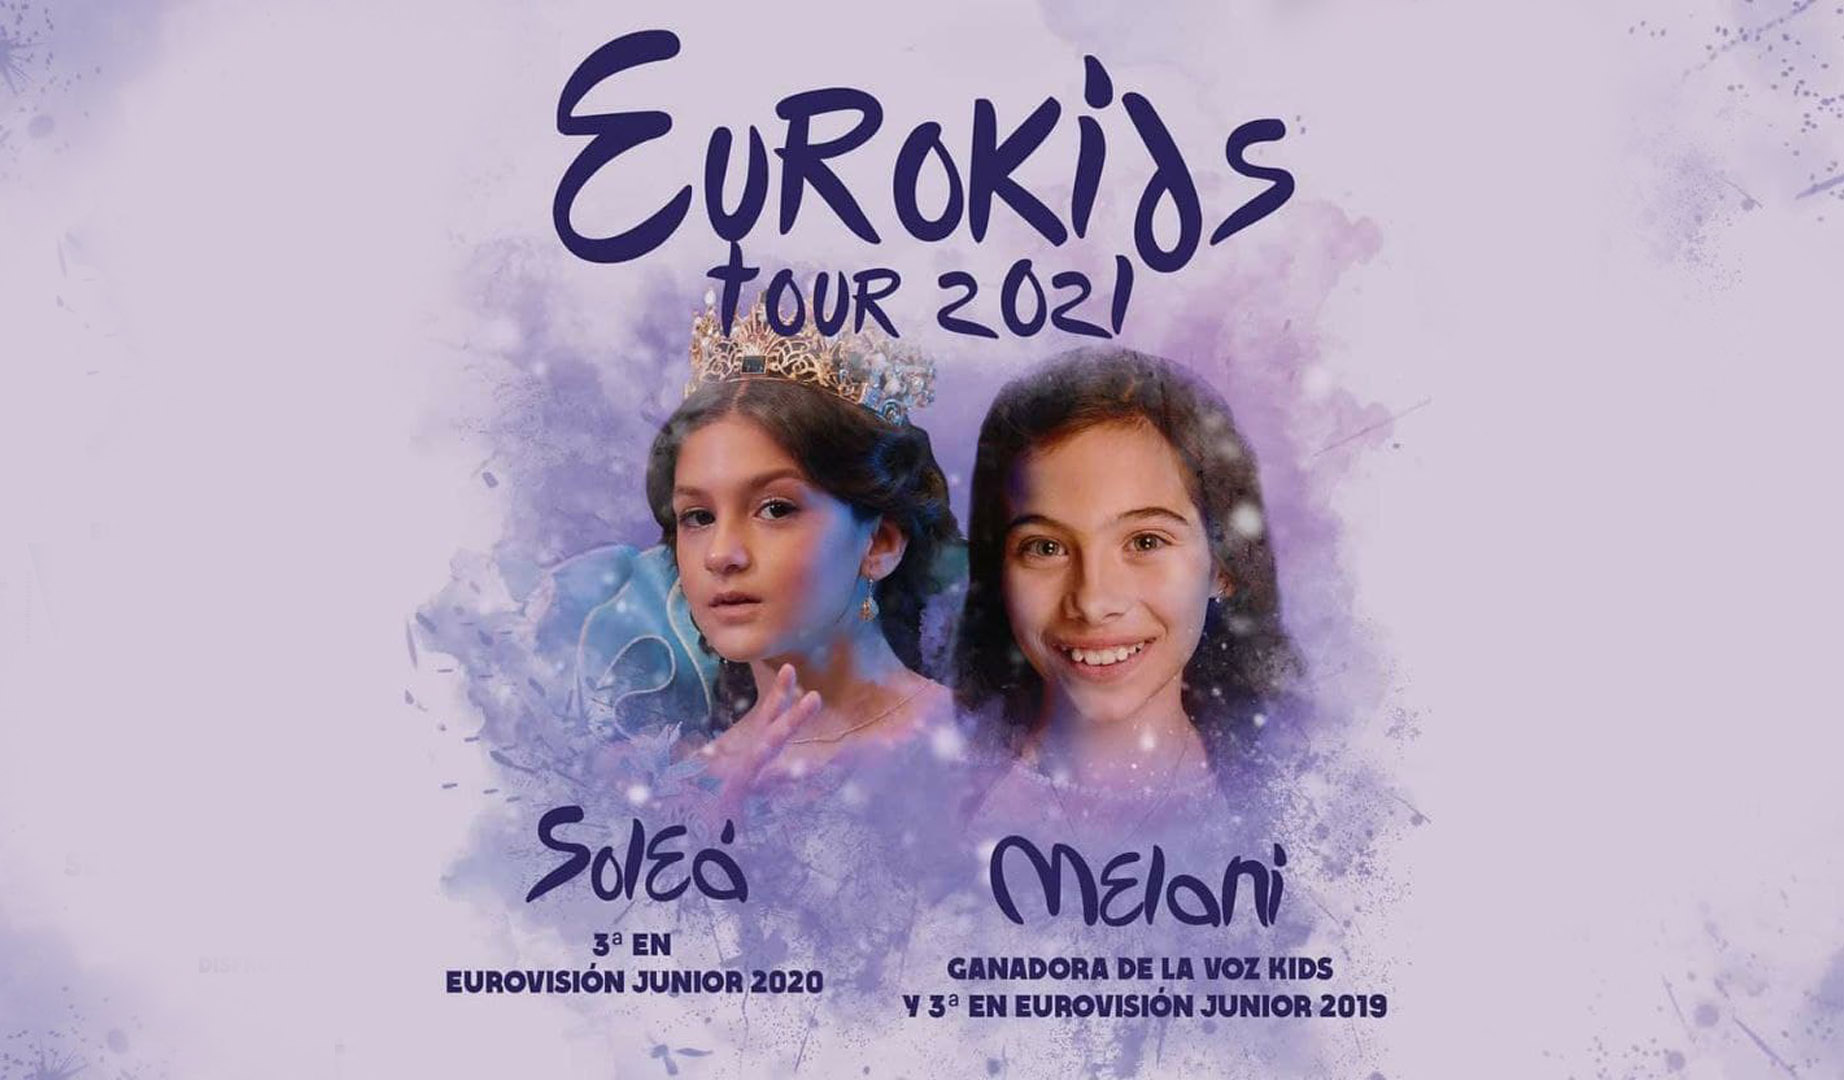 Artistas españoles de Eurovisión Junior inician una gira de conciertos por España bajo el nombre “Eurokids”